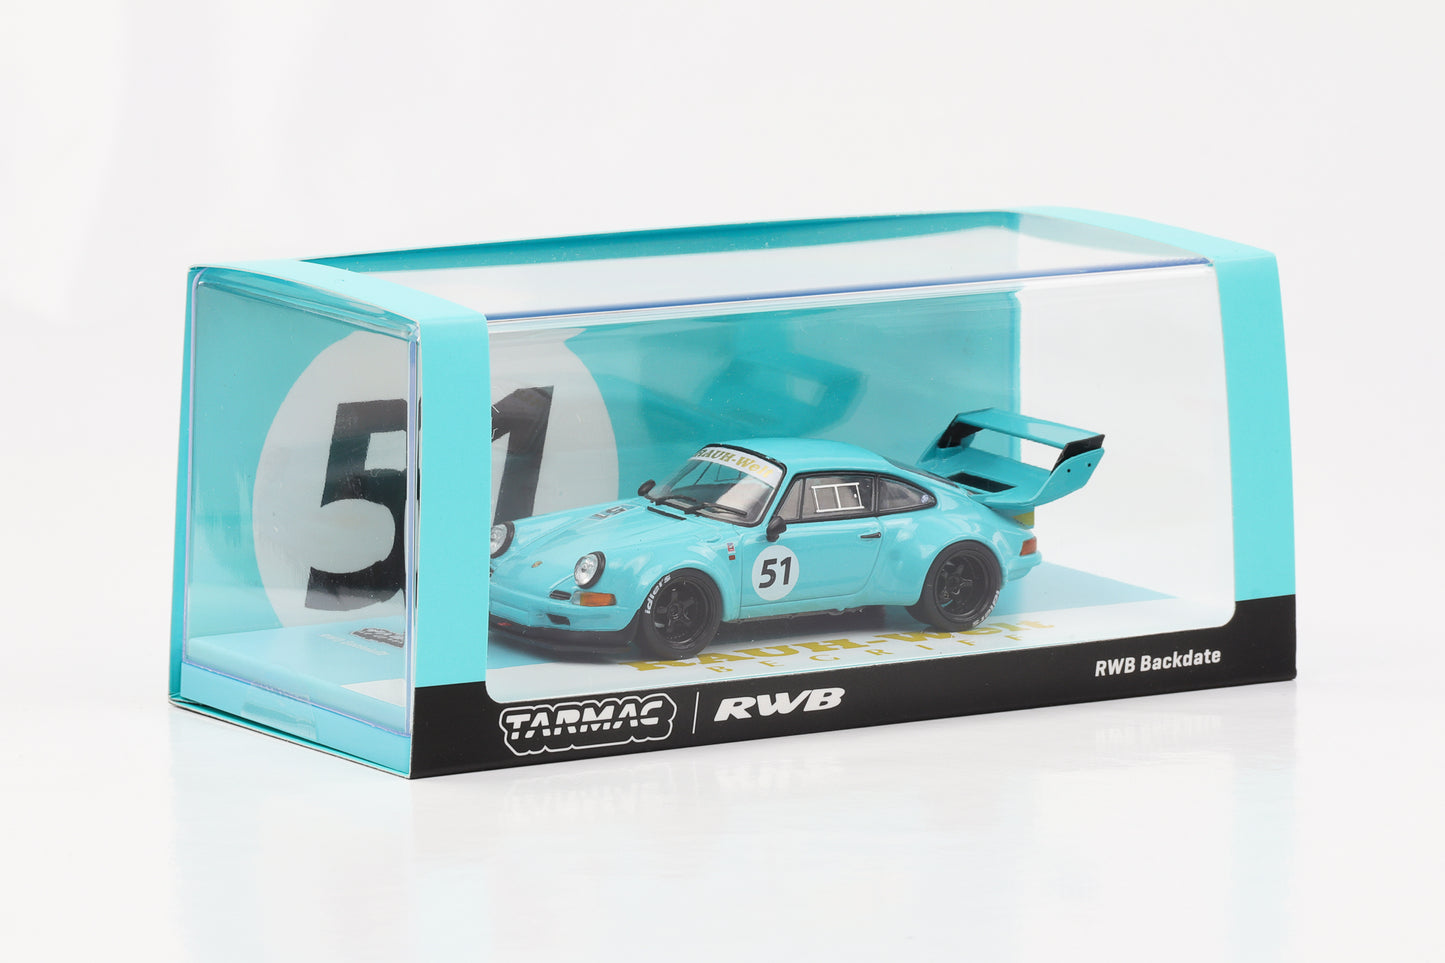 1:43 Porsche 911 964 RWB #51 Backdate RAUH-Welt blue Tarmac